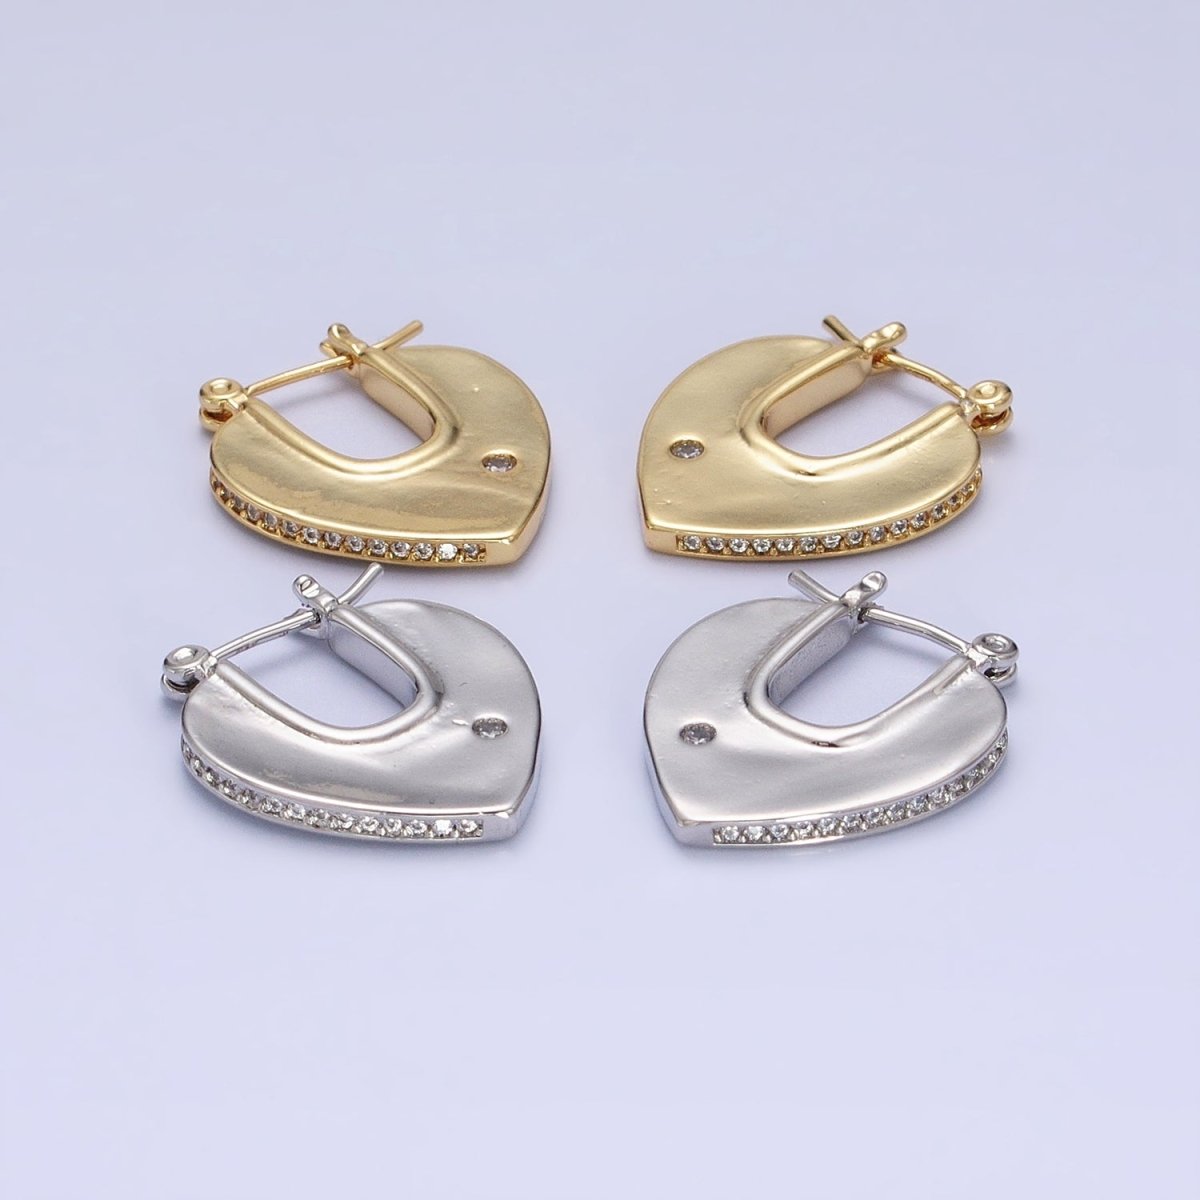 Geometric Hoops Heart Triangle Hoop Earrings Statement Jewelry 14k Gold Filled Earrings AB727 AB728 - DLUXCA